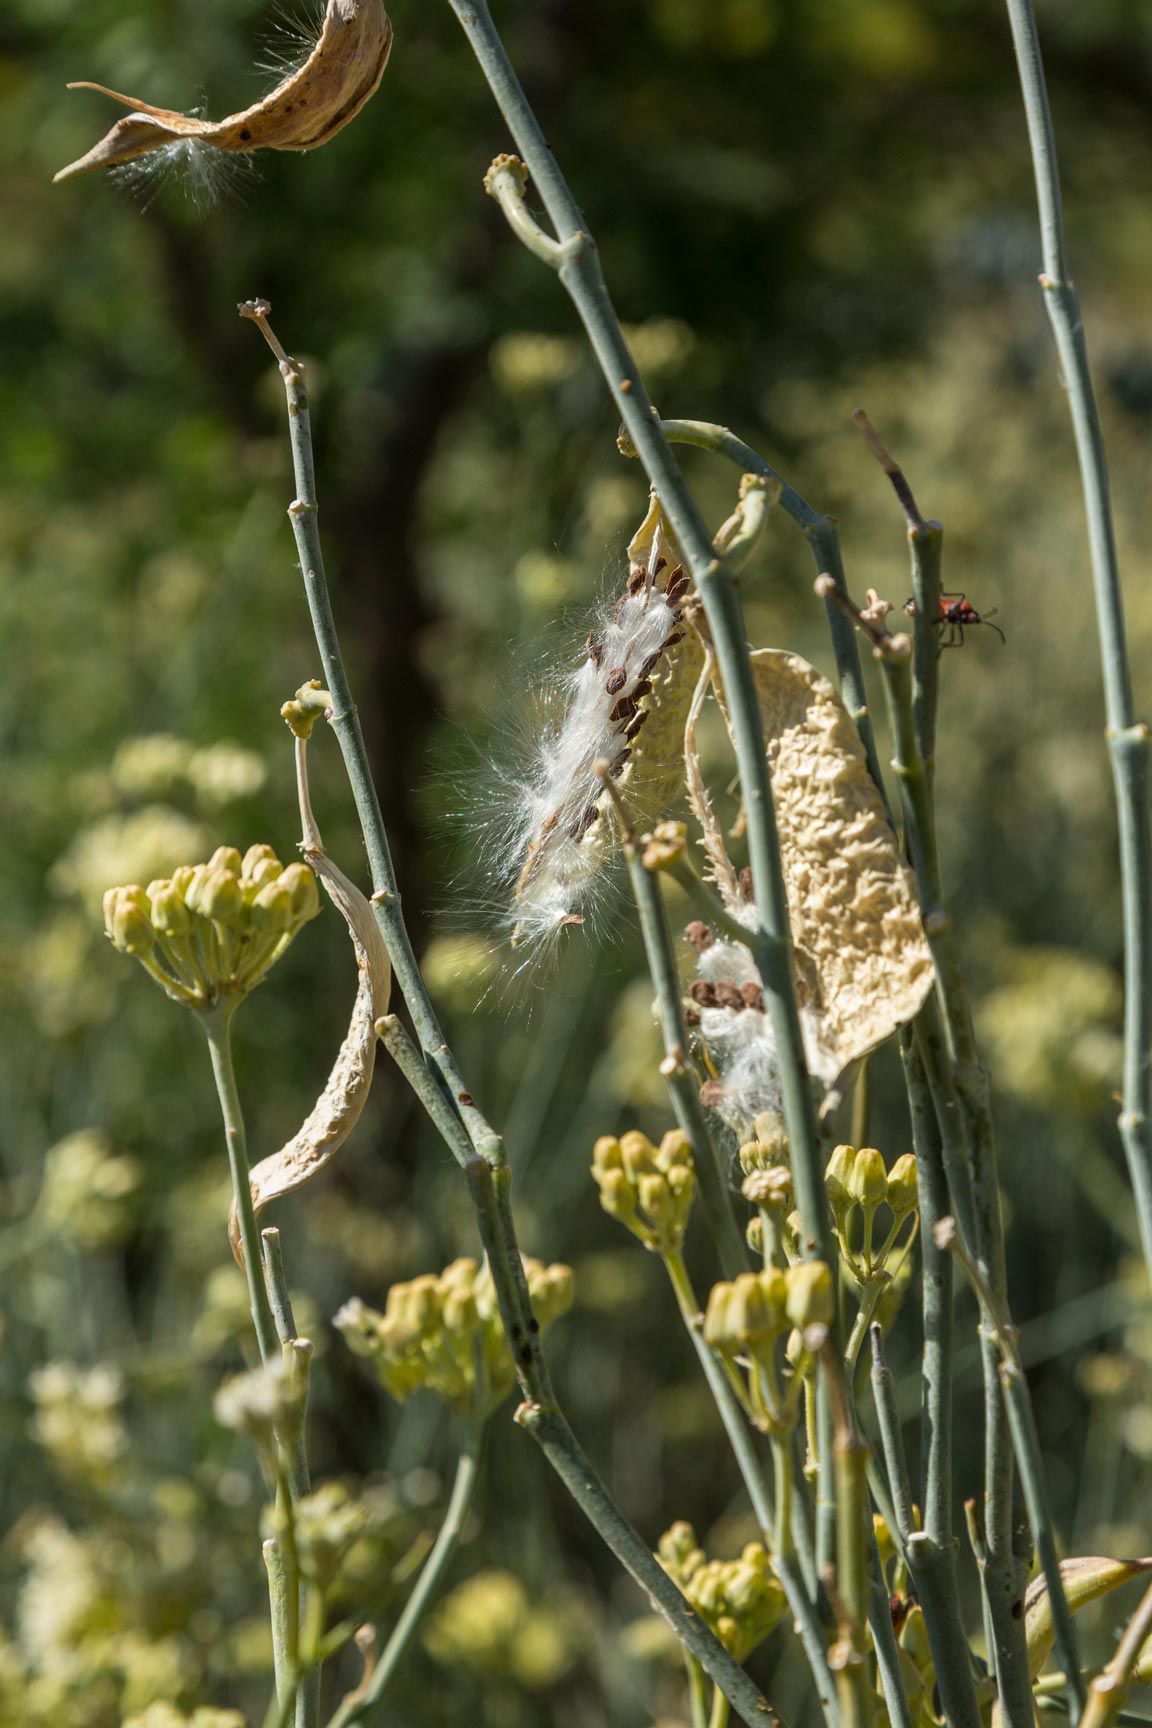 An open seedpod of a Desert Milkweed plant.